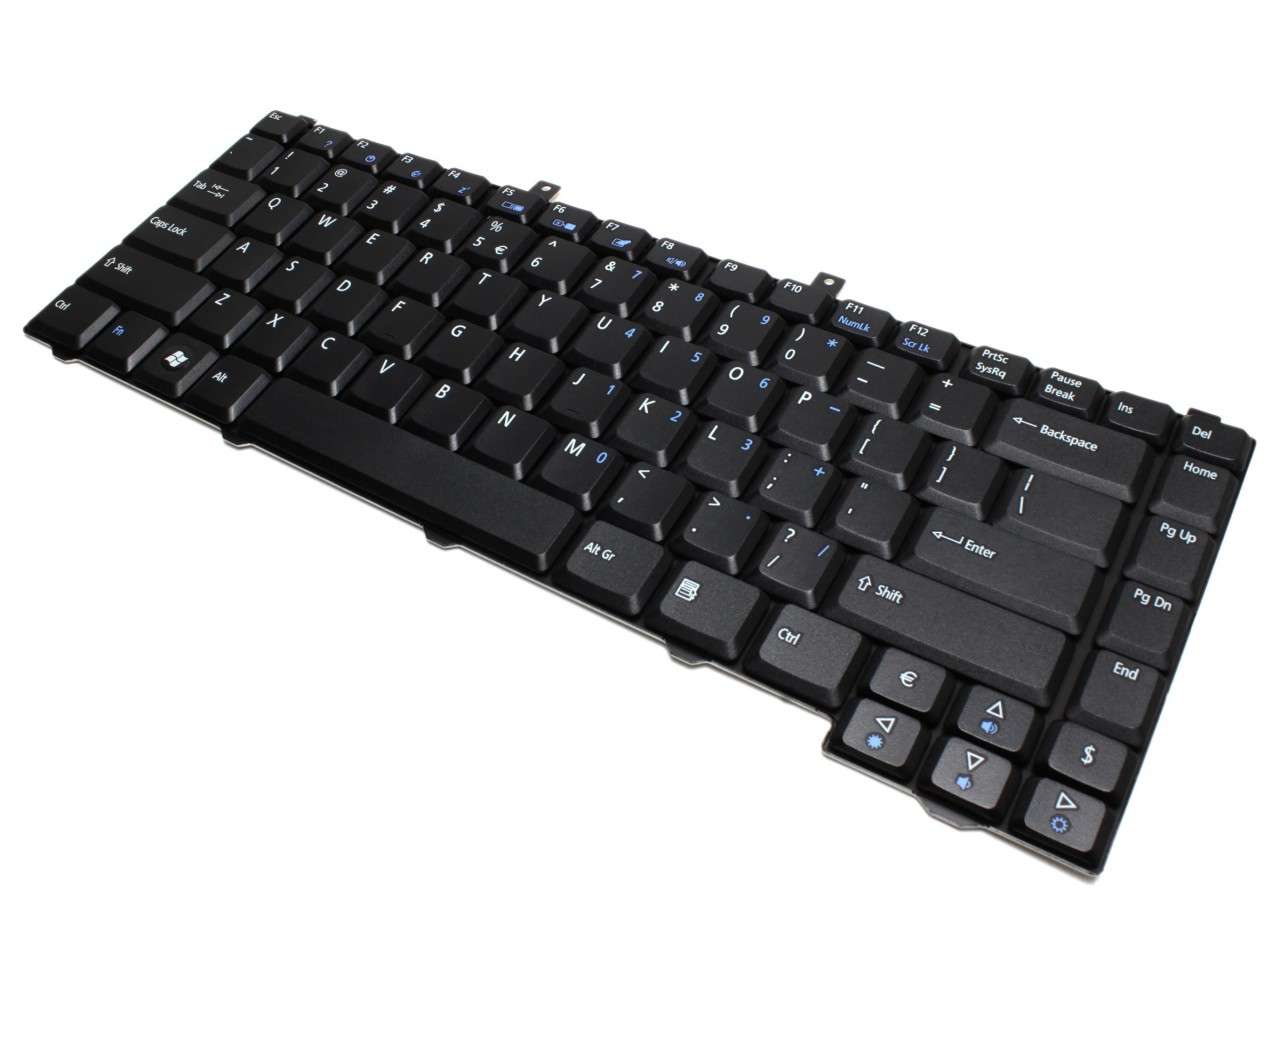 Tastatura Acer Aspire 1671WLMi